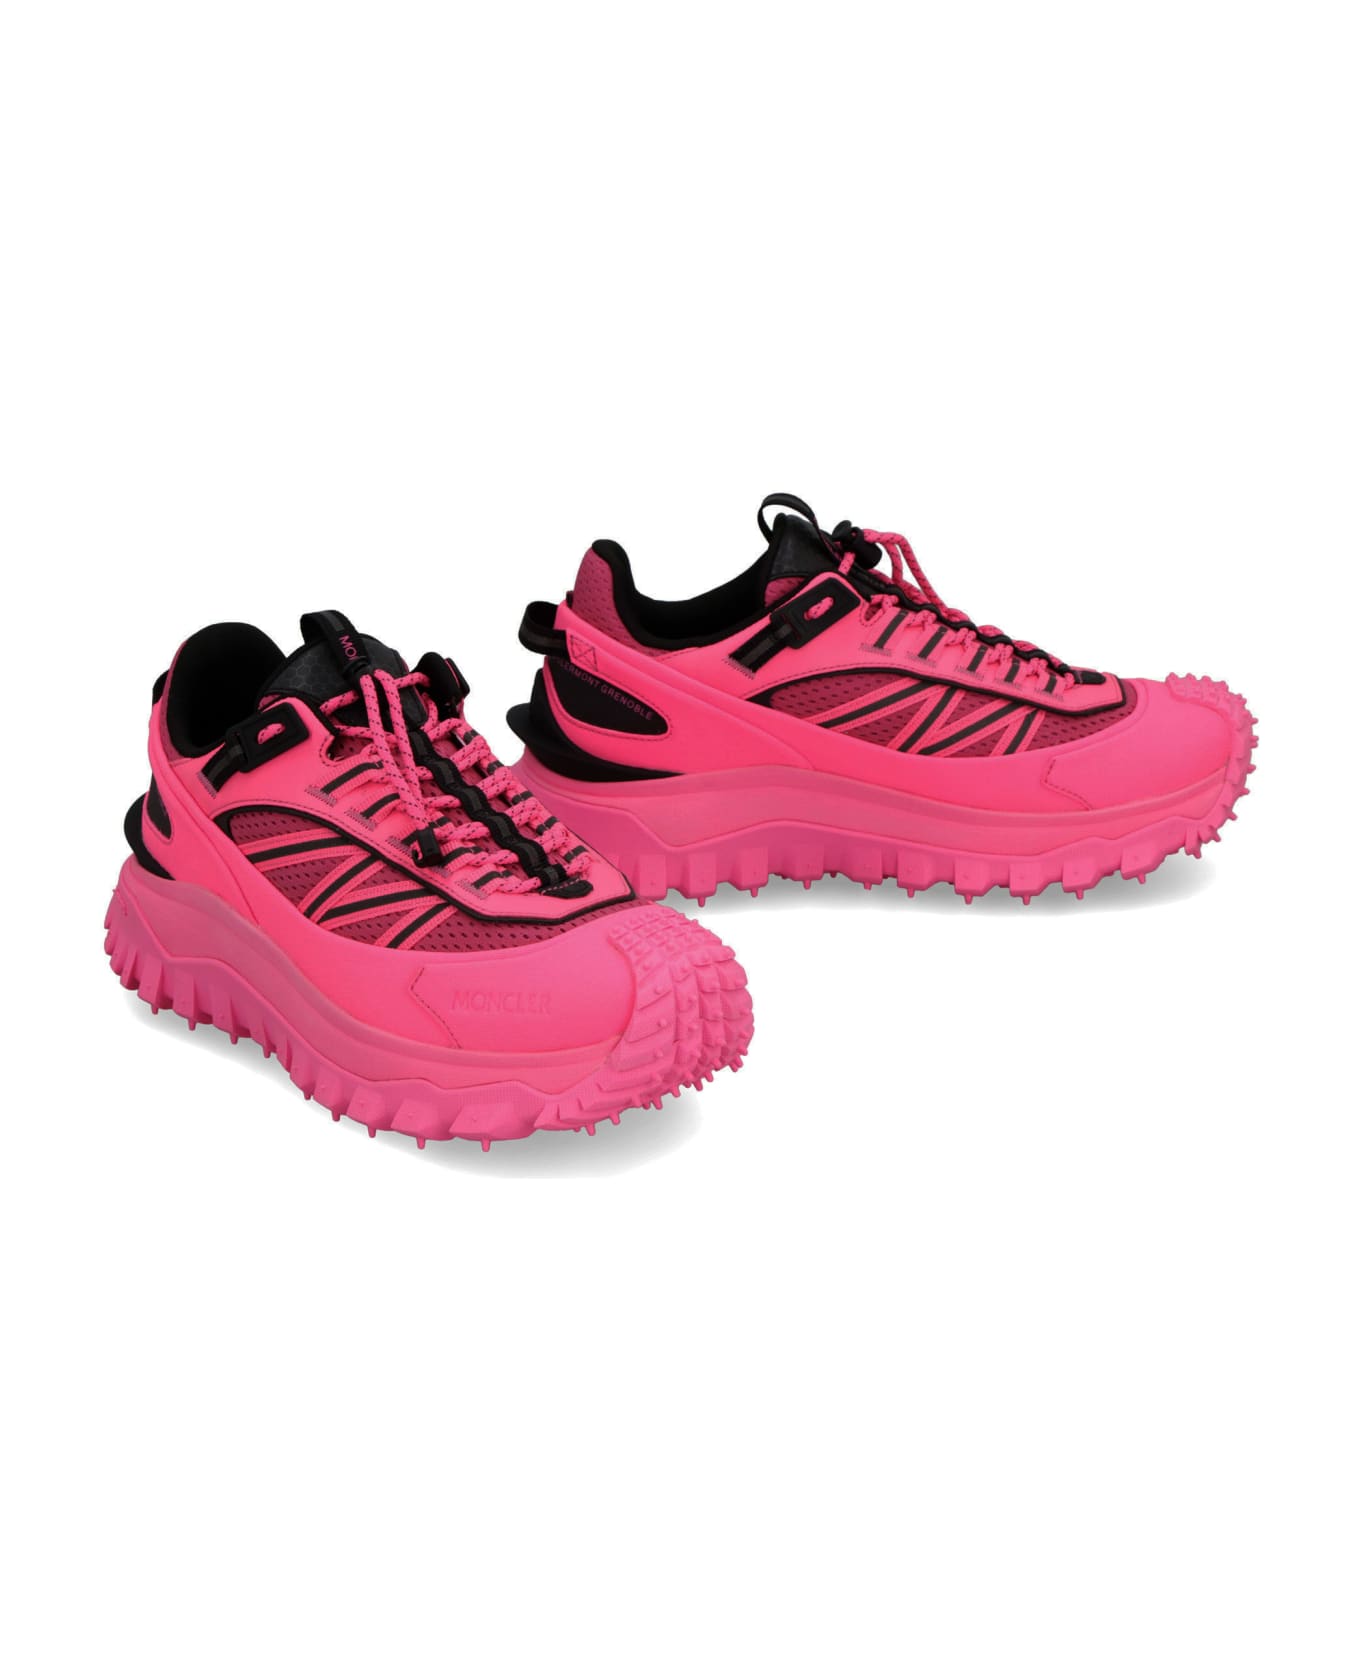 Moncler Grenoble Grenoble Trailgrip Gtx Sneakers - Pink スニーカー